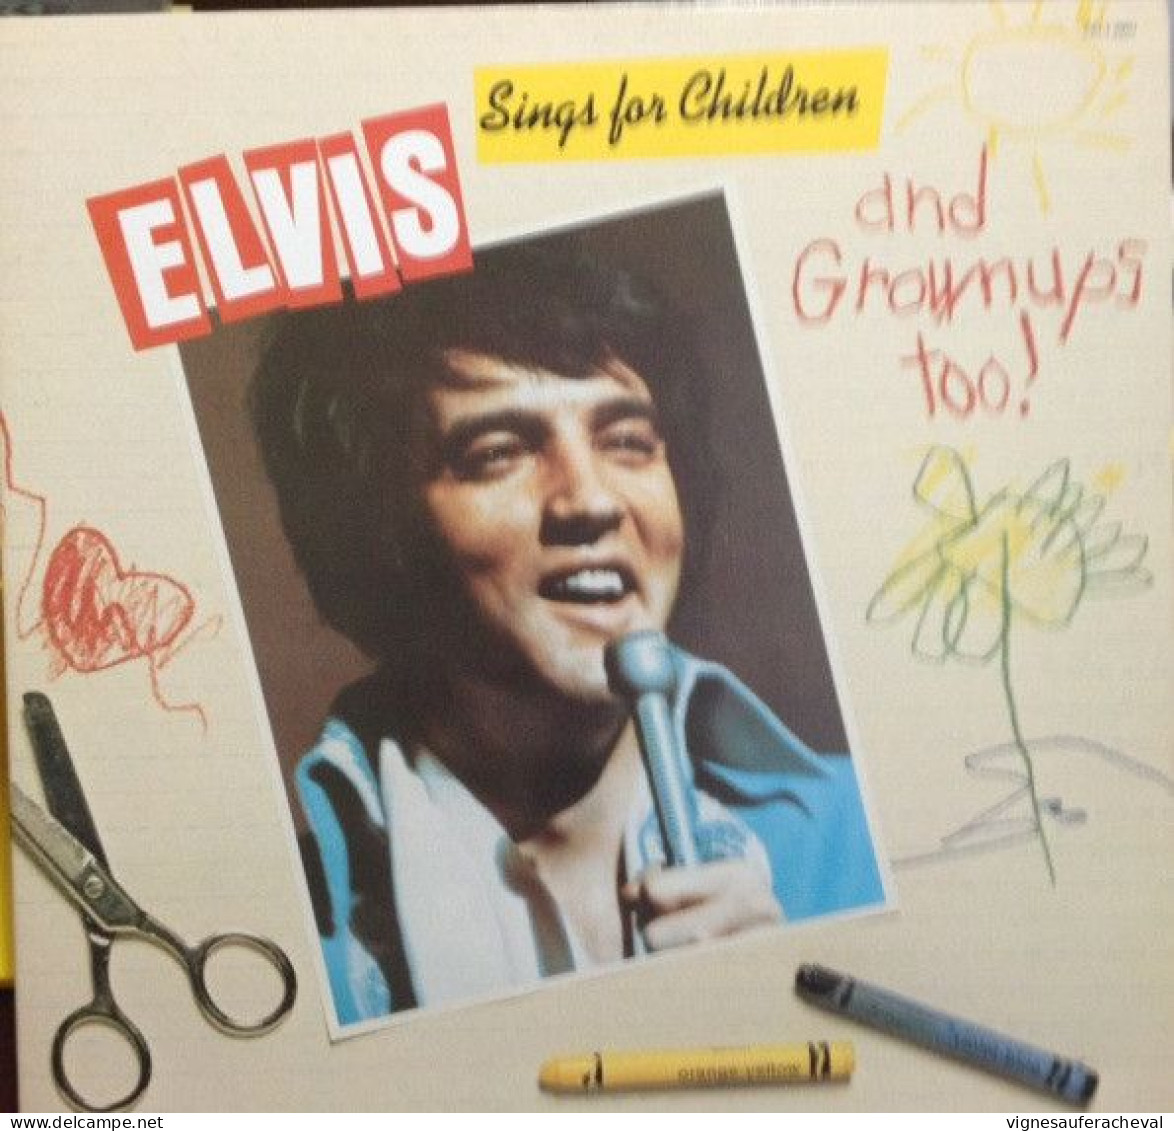 Elvis Presley - Elvis Sings For Children And Grownups Too!! - Sonstige - Englische Musik